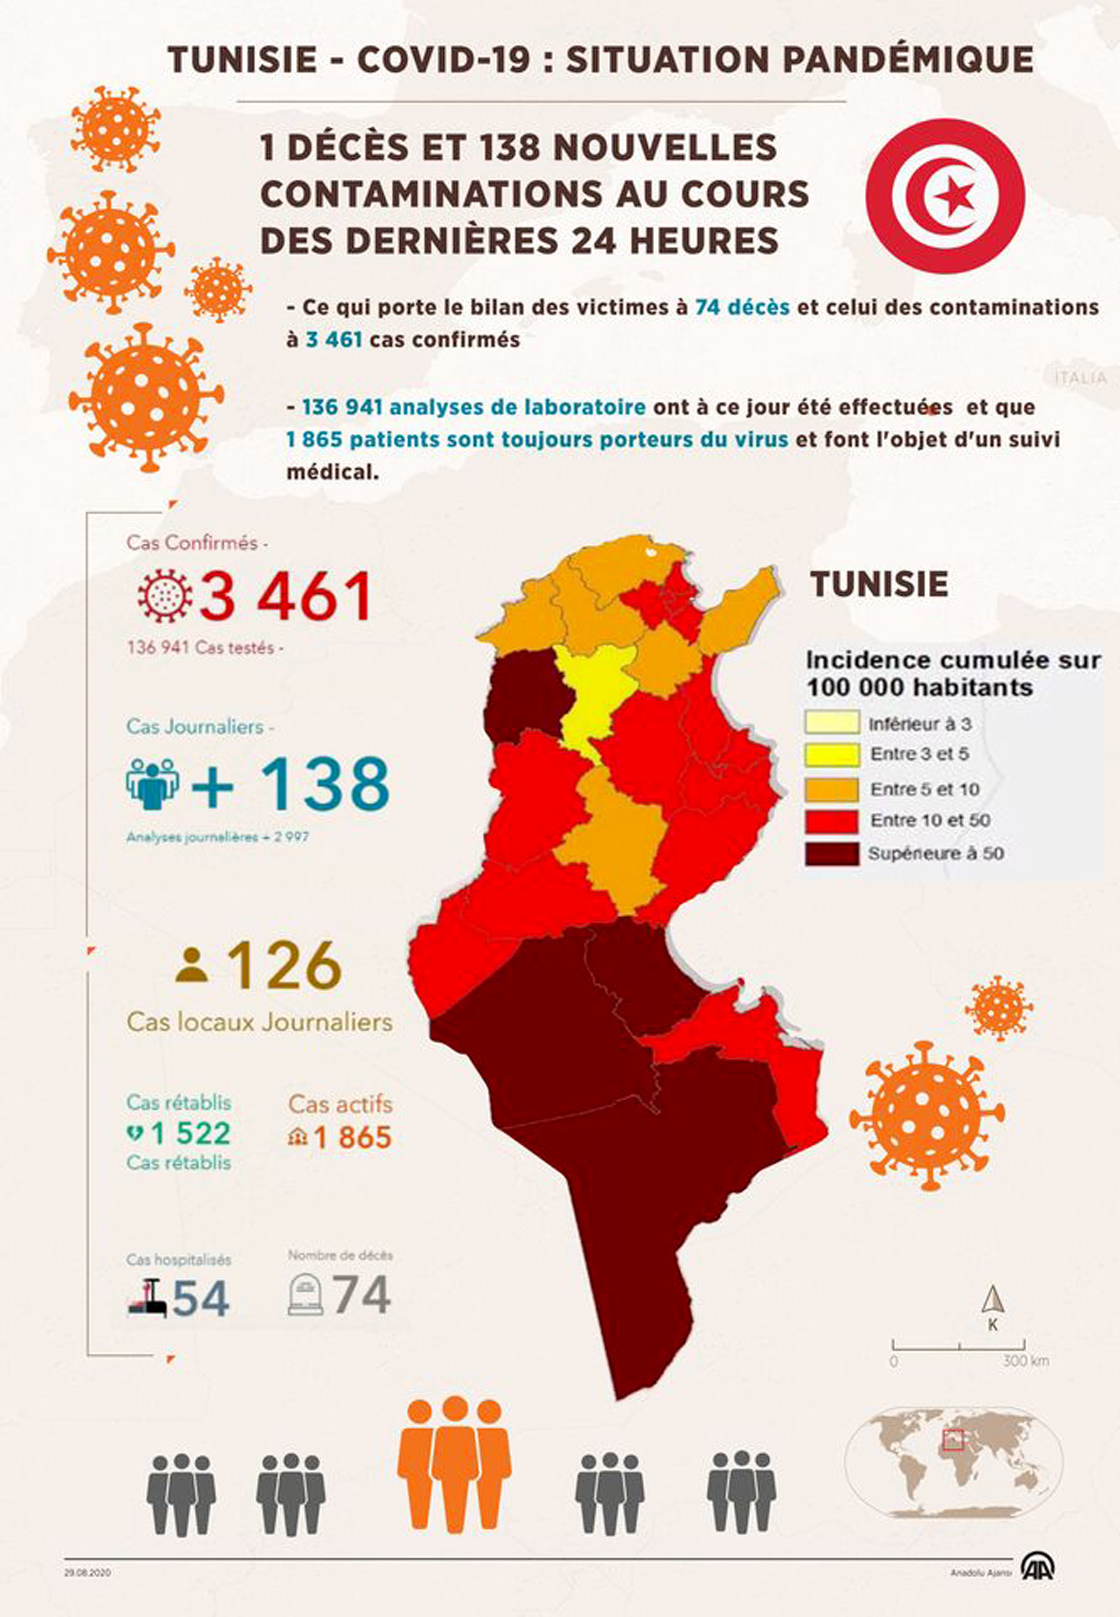 Tunisie / Covid-19 : 1 décès et 138 nouvelles contaminations au cours des dernières 24 heures